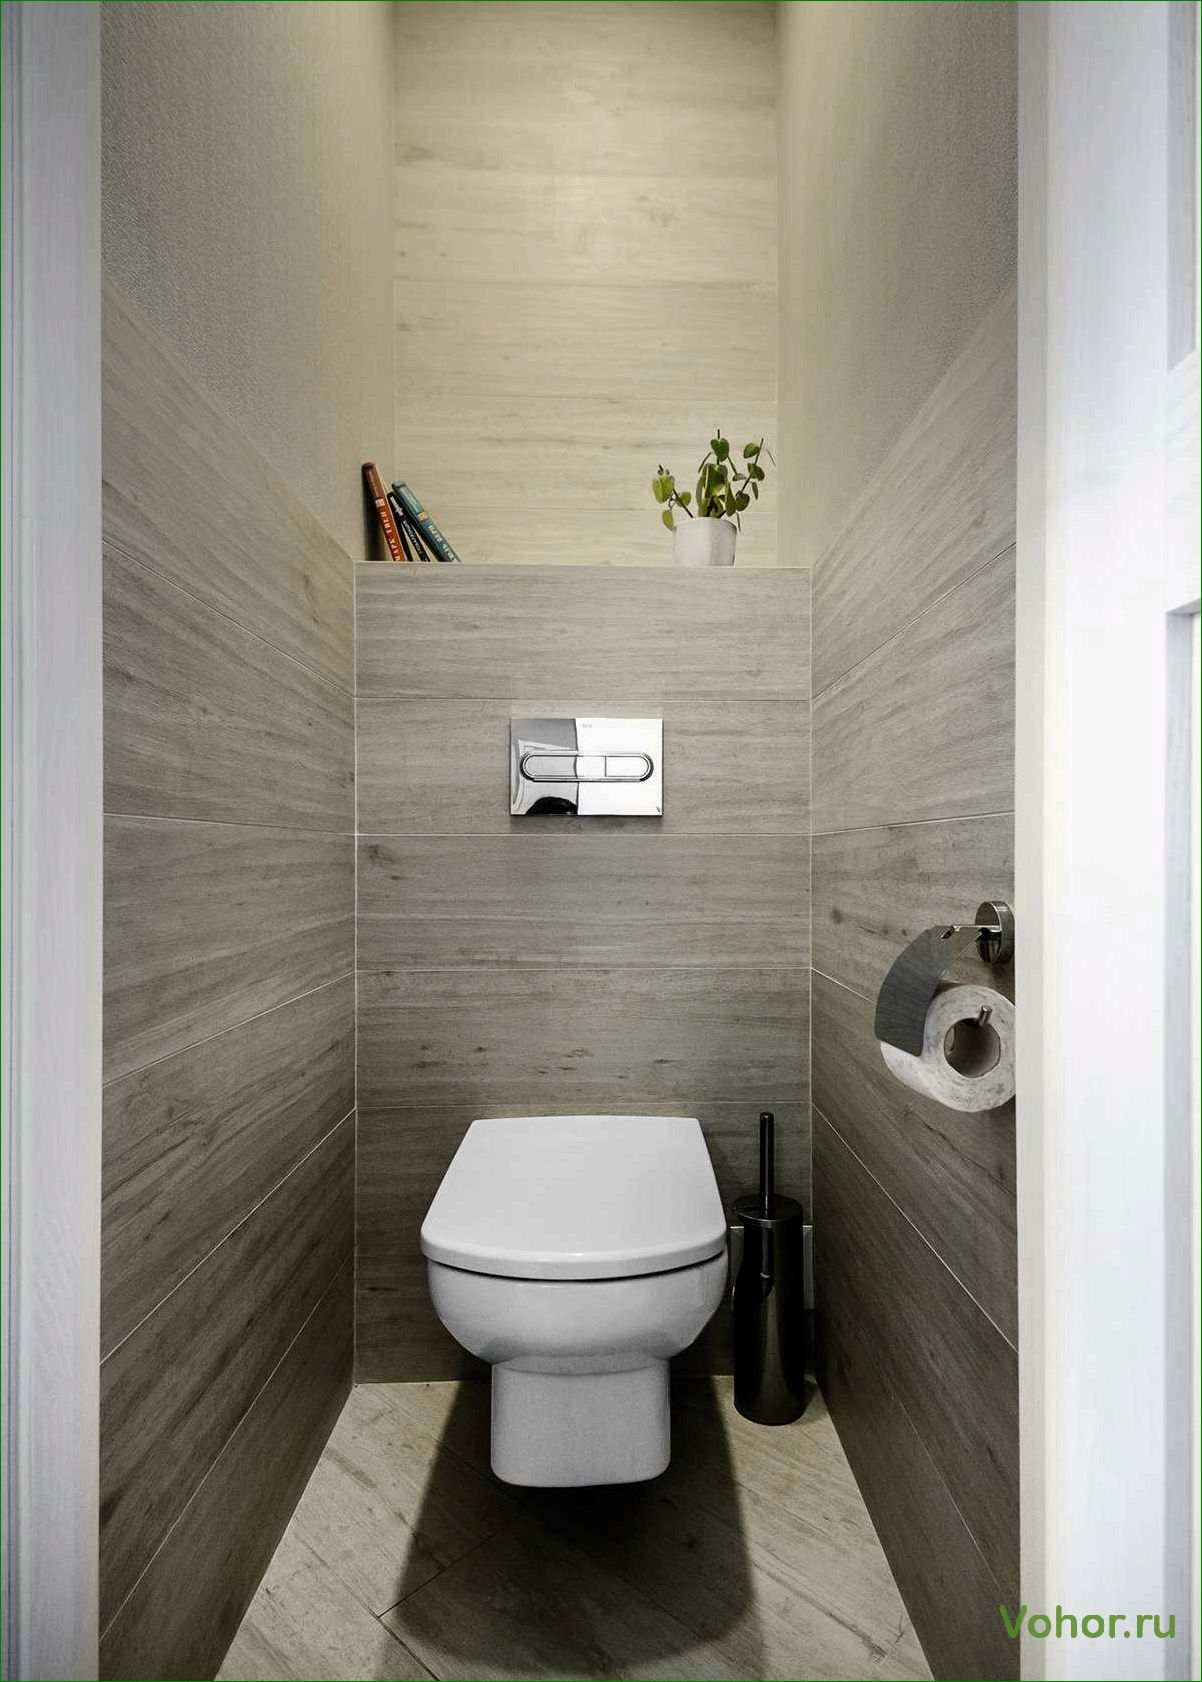 Лучшие идеи дизайна туалета из ламината — топ-10 креативных решений для стильного интерьера